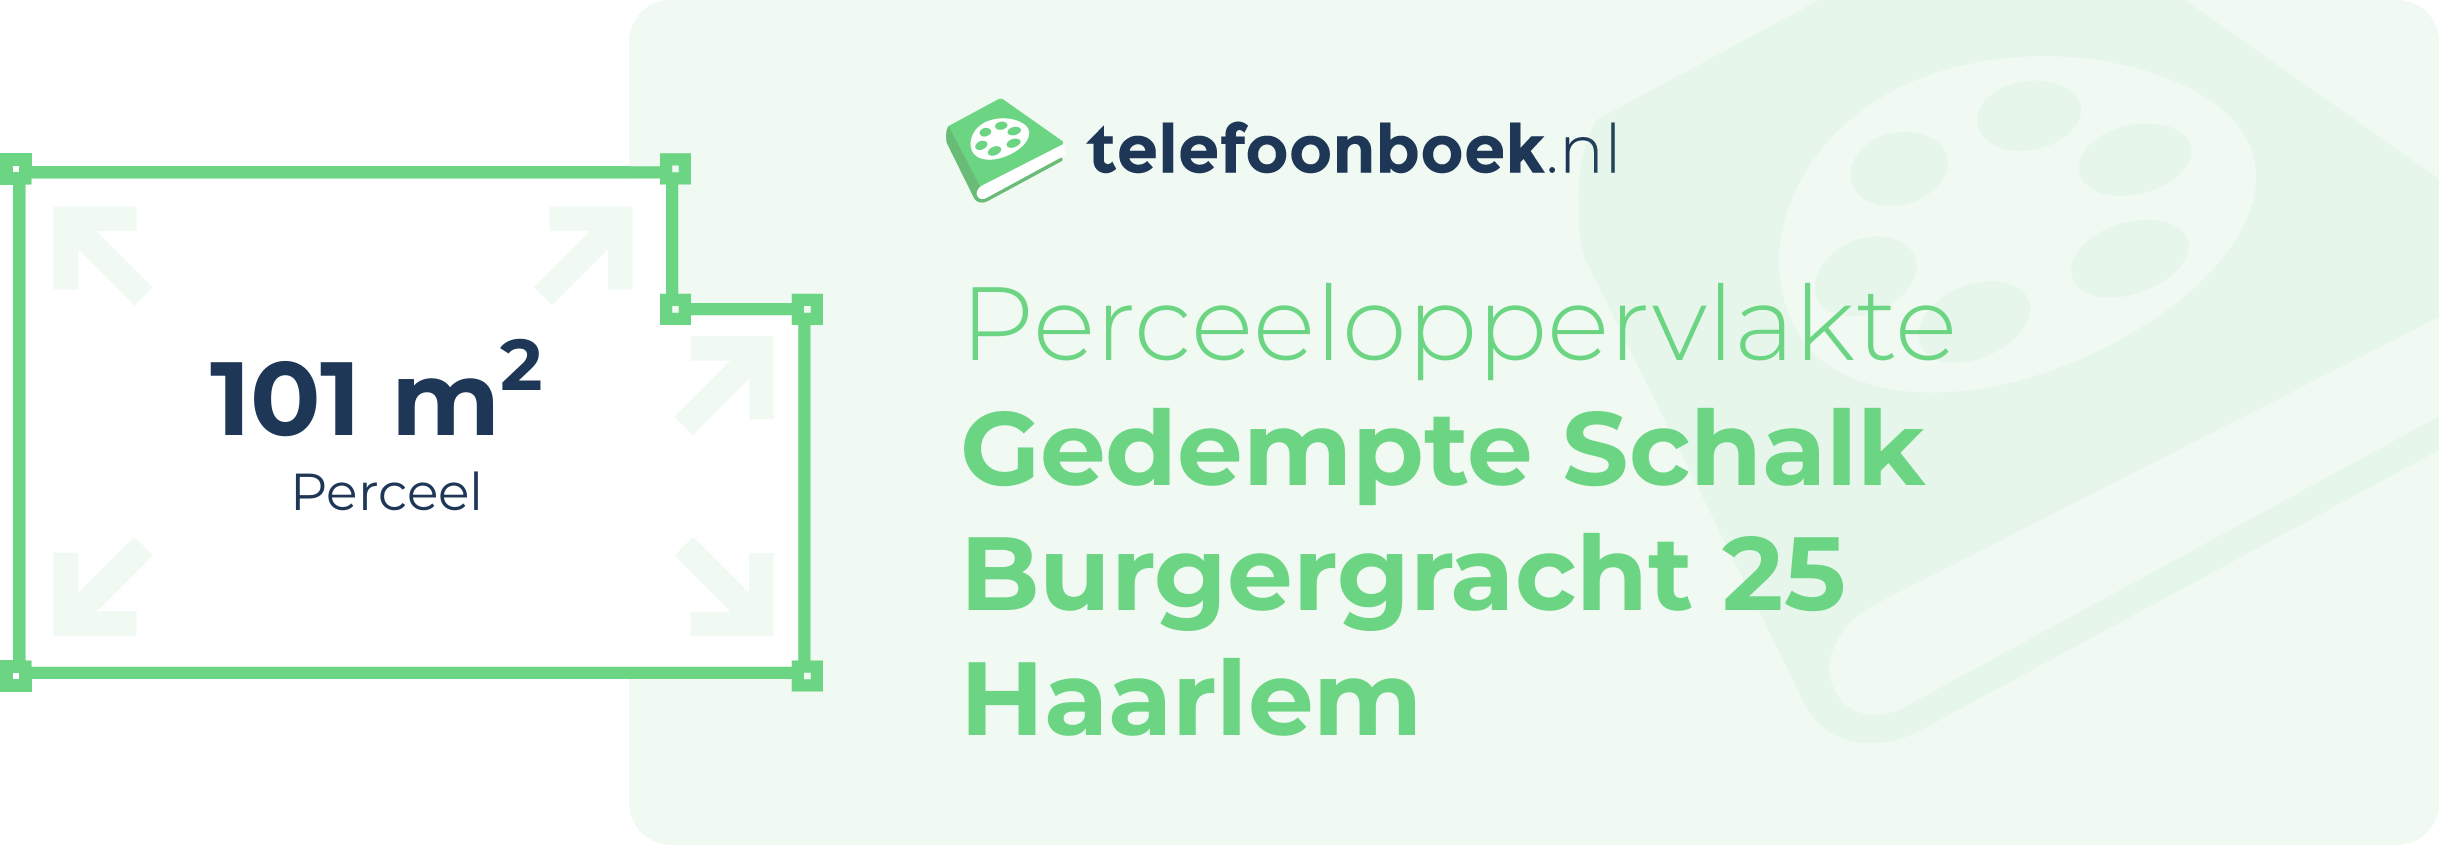 Perceeloppervlakte Gedempte Schalk Burgergracht 25 Haarlem